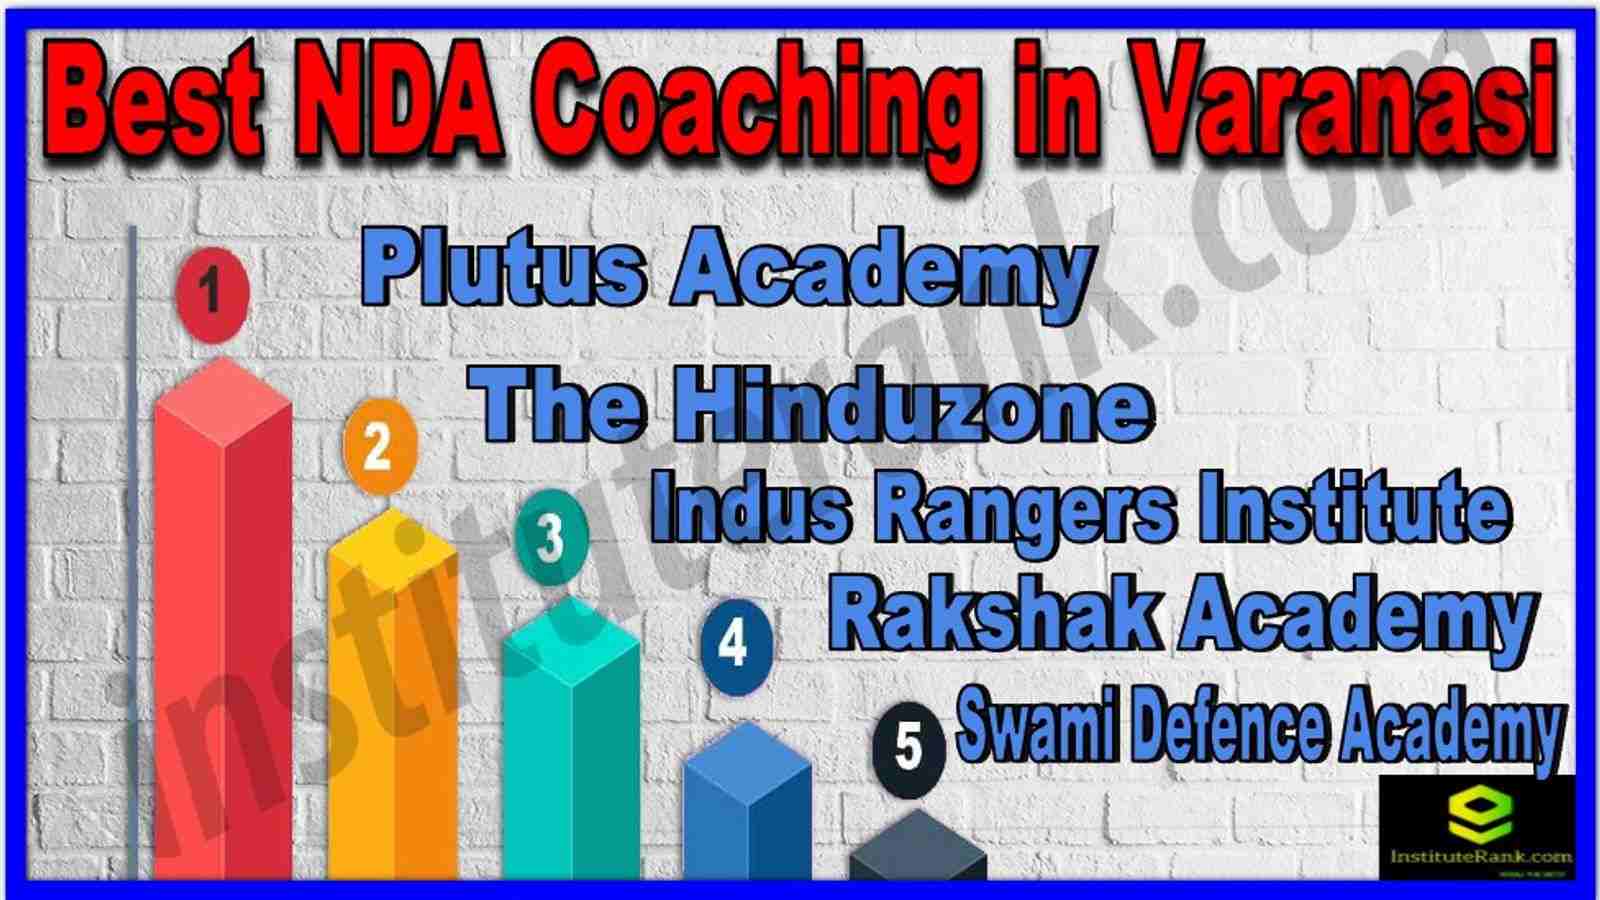 Best NDA Coaching in Varanasi